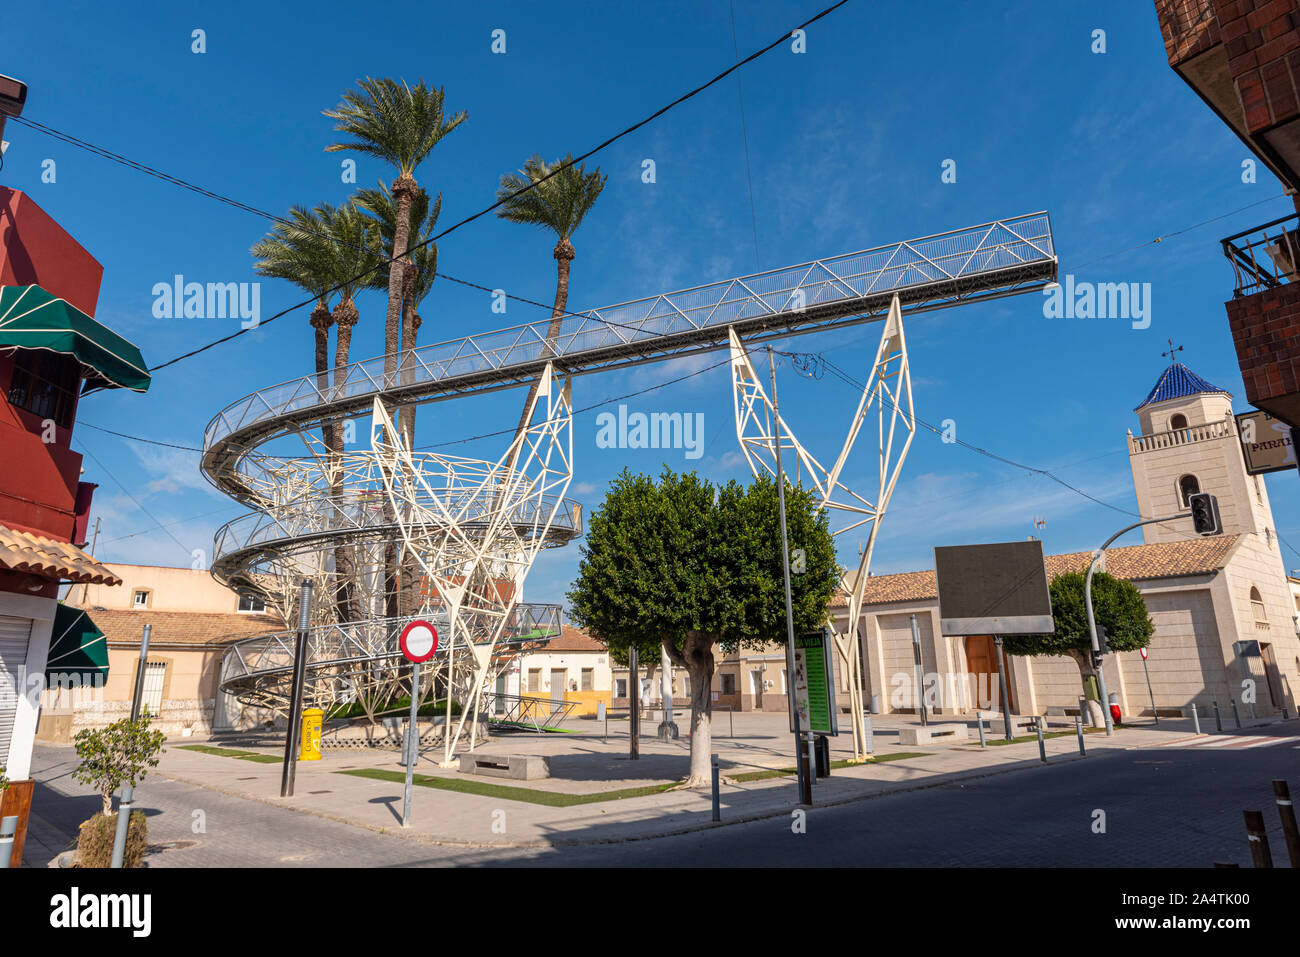 Plaza del Leon, Daya Vieja, Alicante, Espagne. Point de vue de spirale structure conçue pour protéger les 150 ans de palmiers sur la place de la ville Banque D'Images